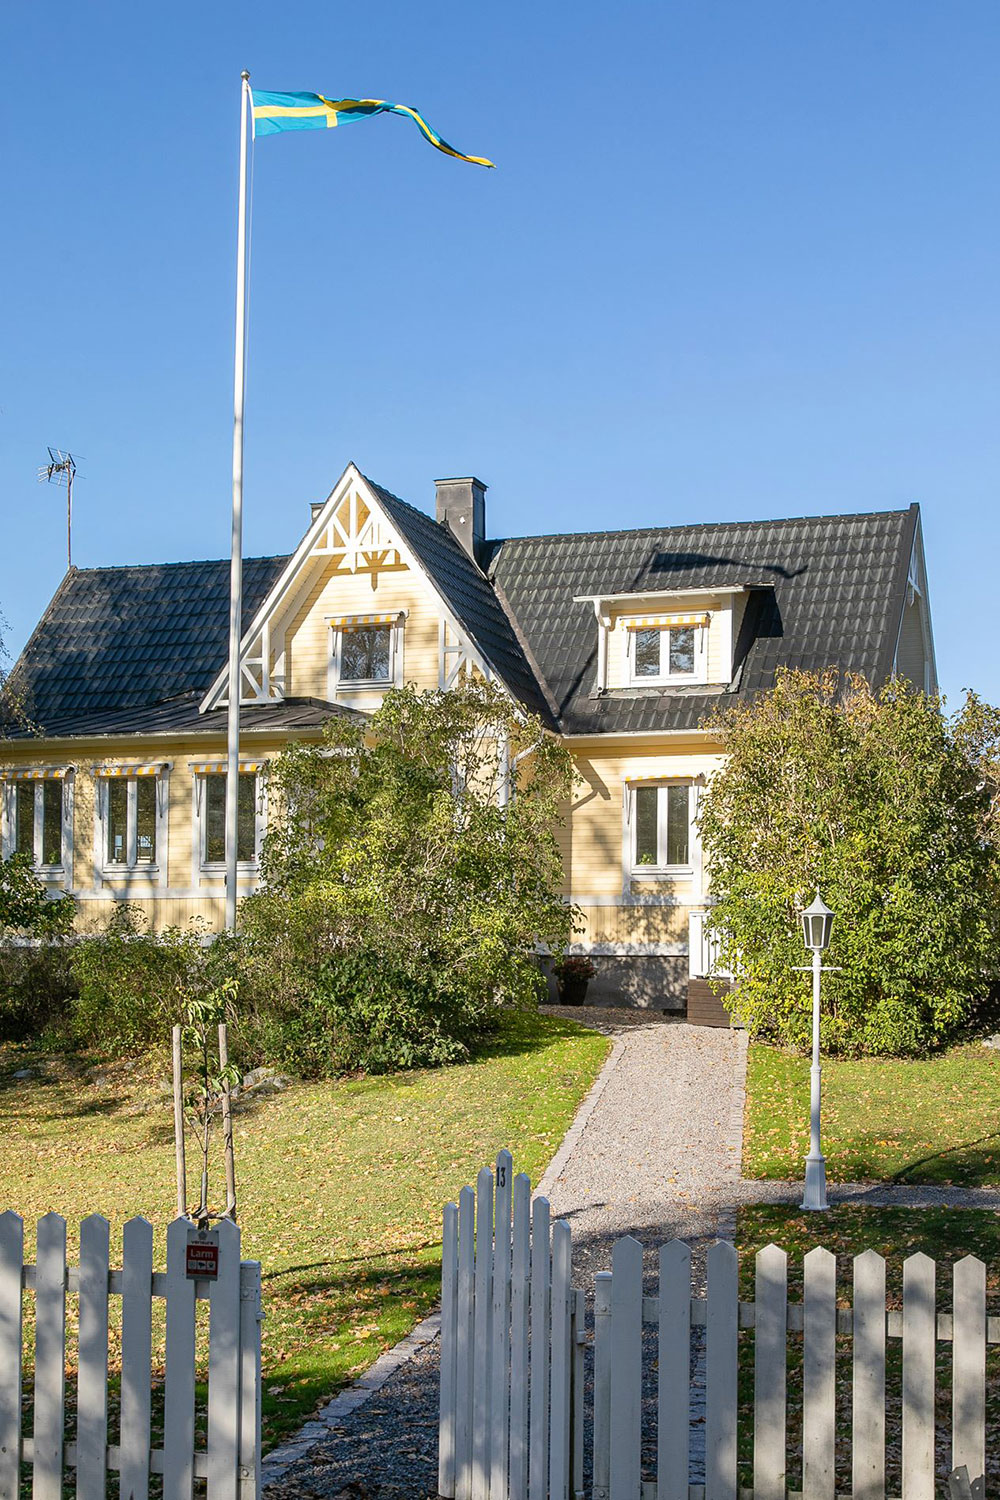 Как c картинки: чудесный желтый домик в Швеции